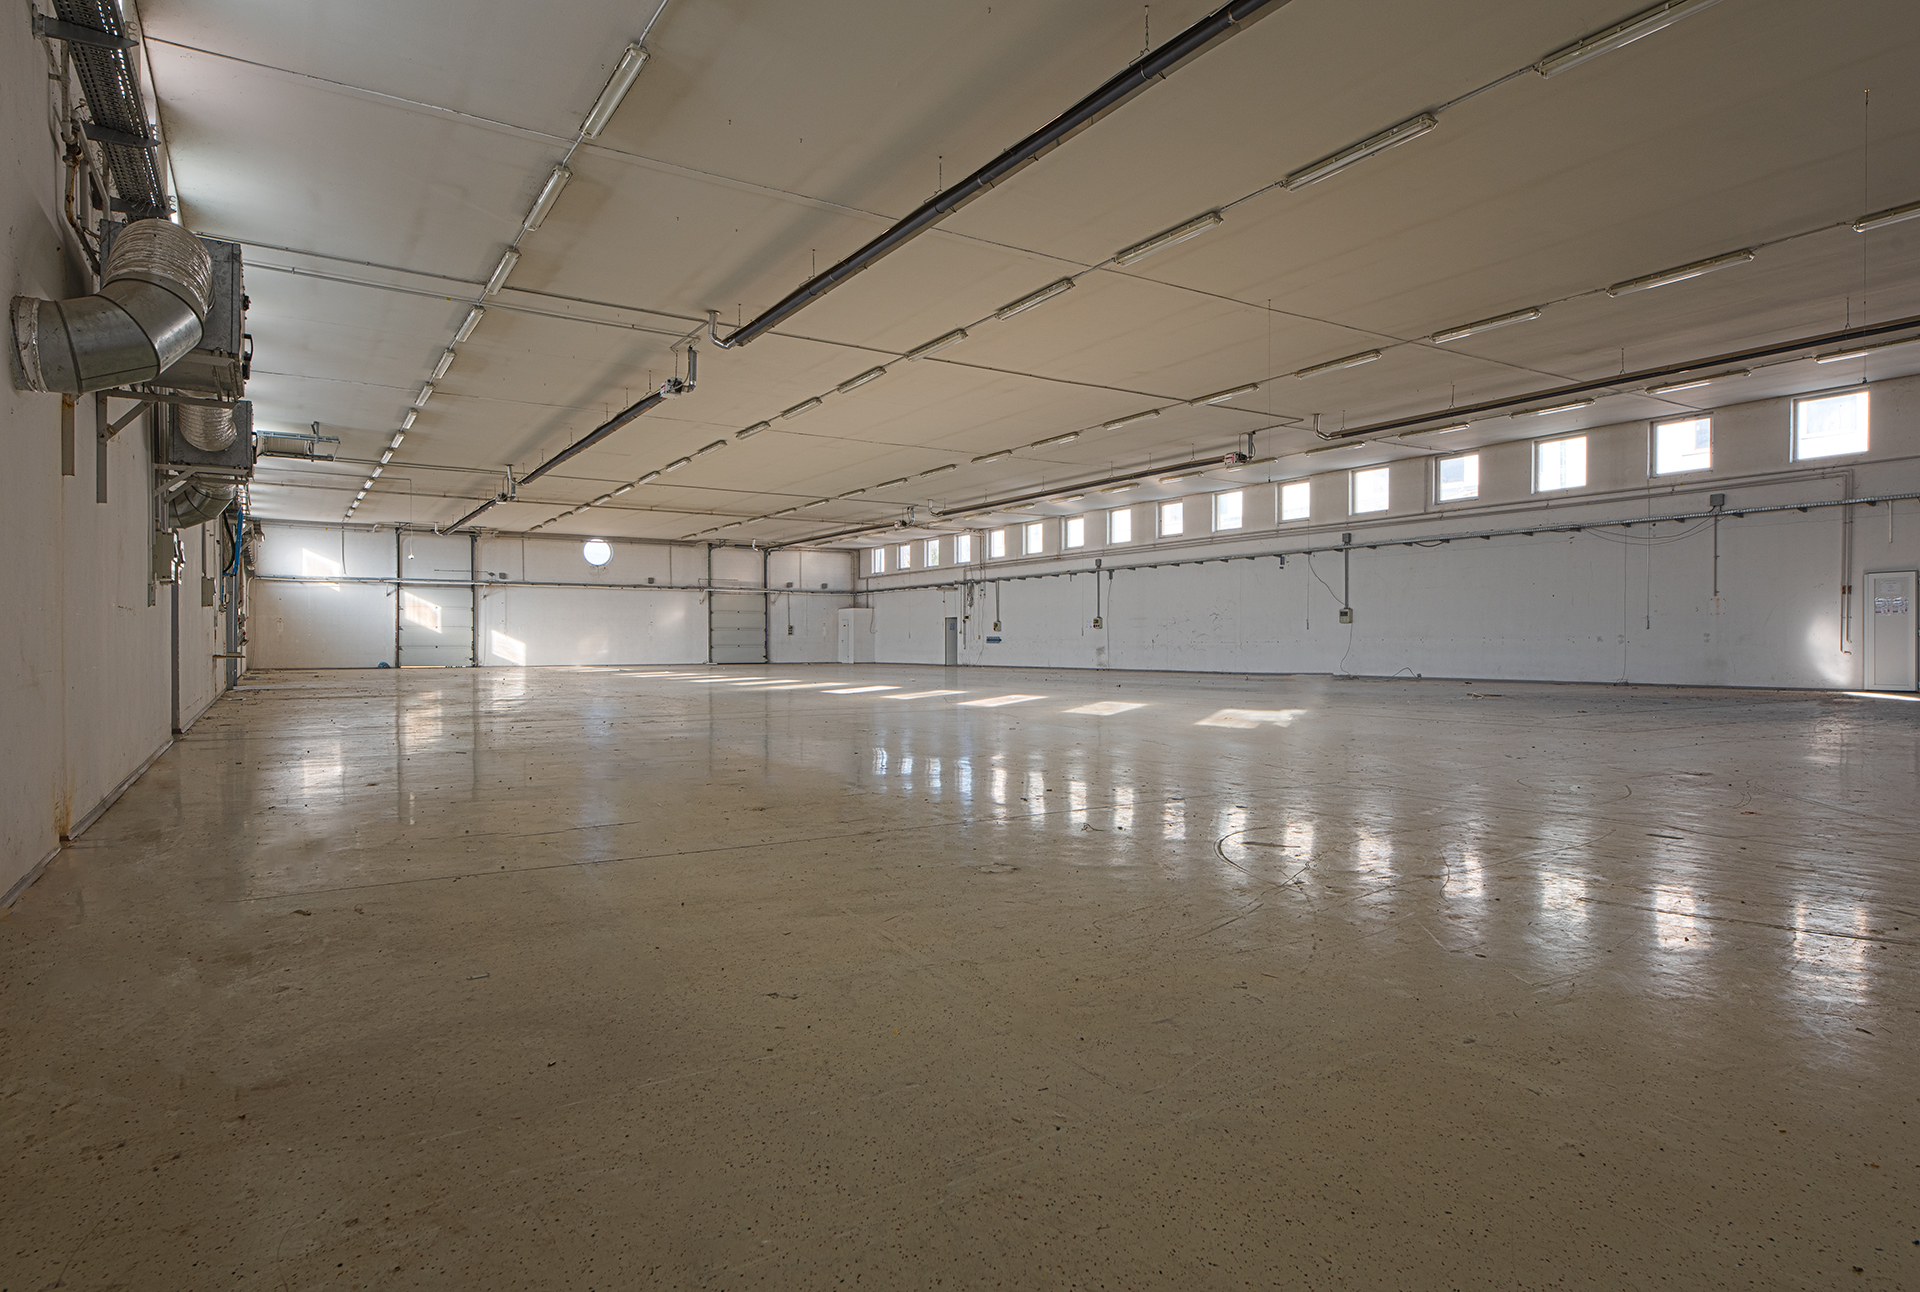 Eladó újszerű 3×1200 m² csarnok együttes 400 m² irodával Pécs déli részén